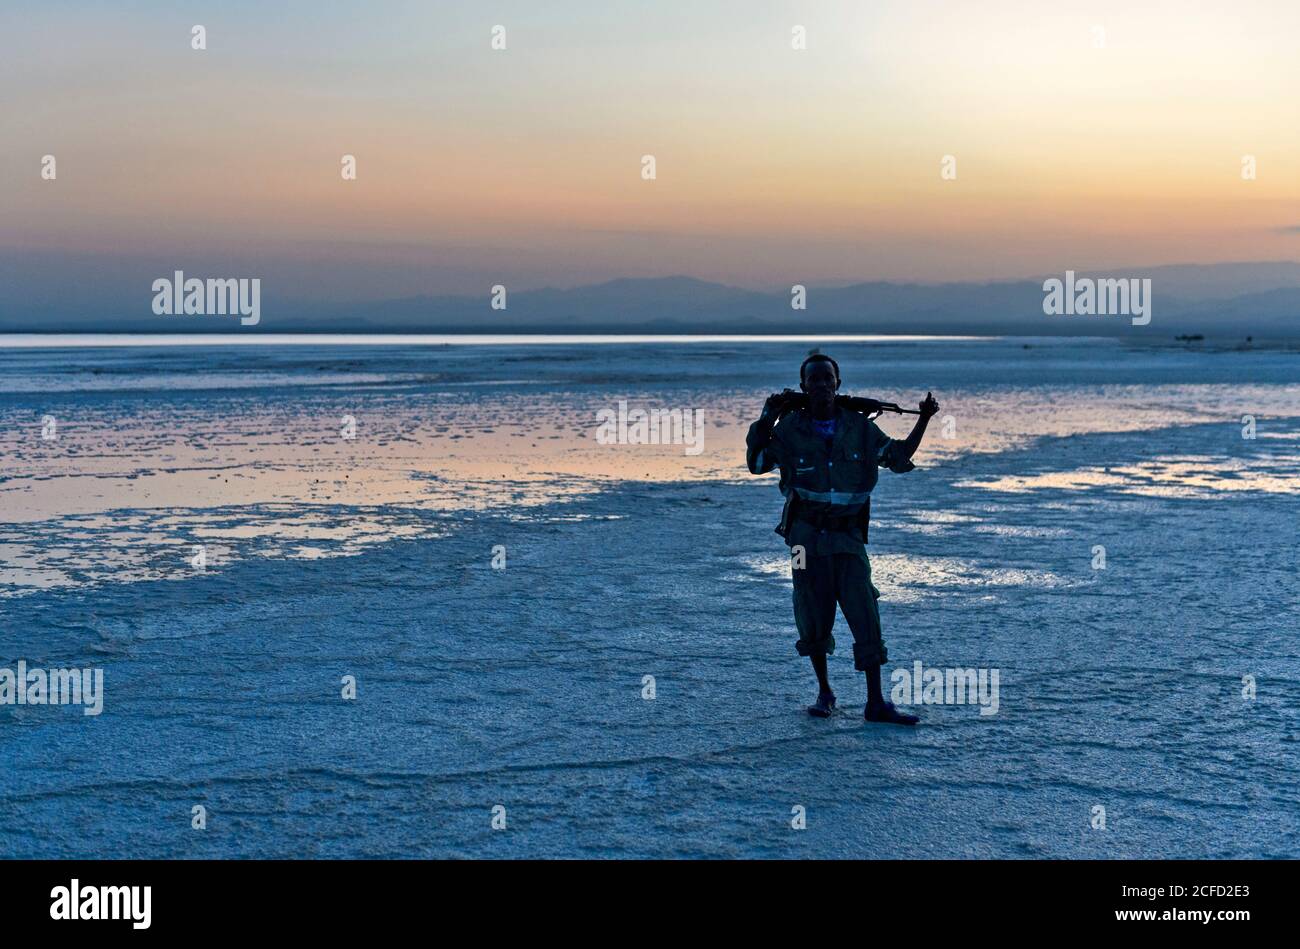 Garde de sécurité avec Kalachnikov au lac de sel d'Assale au coucher du soleil, Hamadela, Danakil Dépression triangle Afar, Ethiopie Banque D'Images